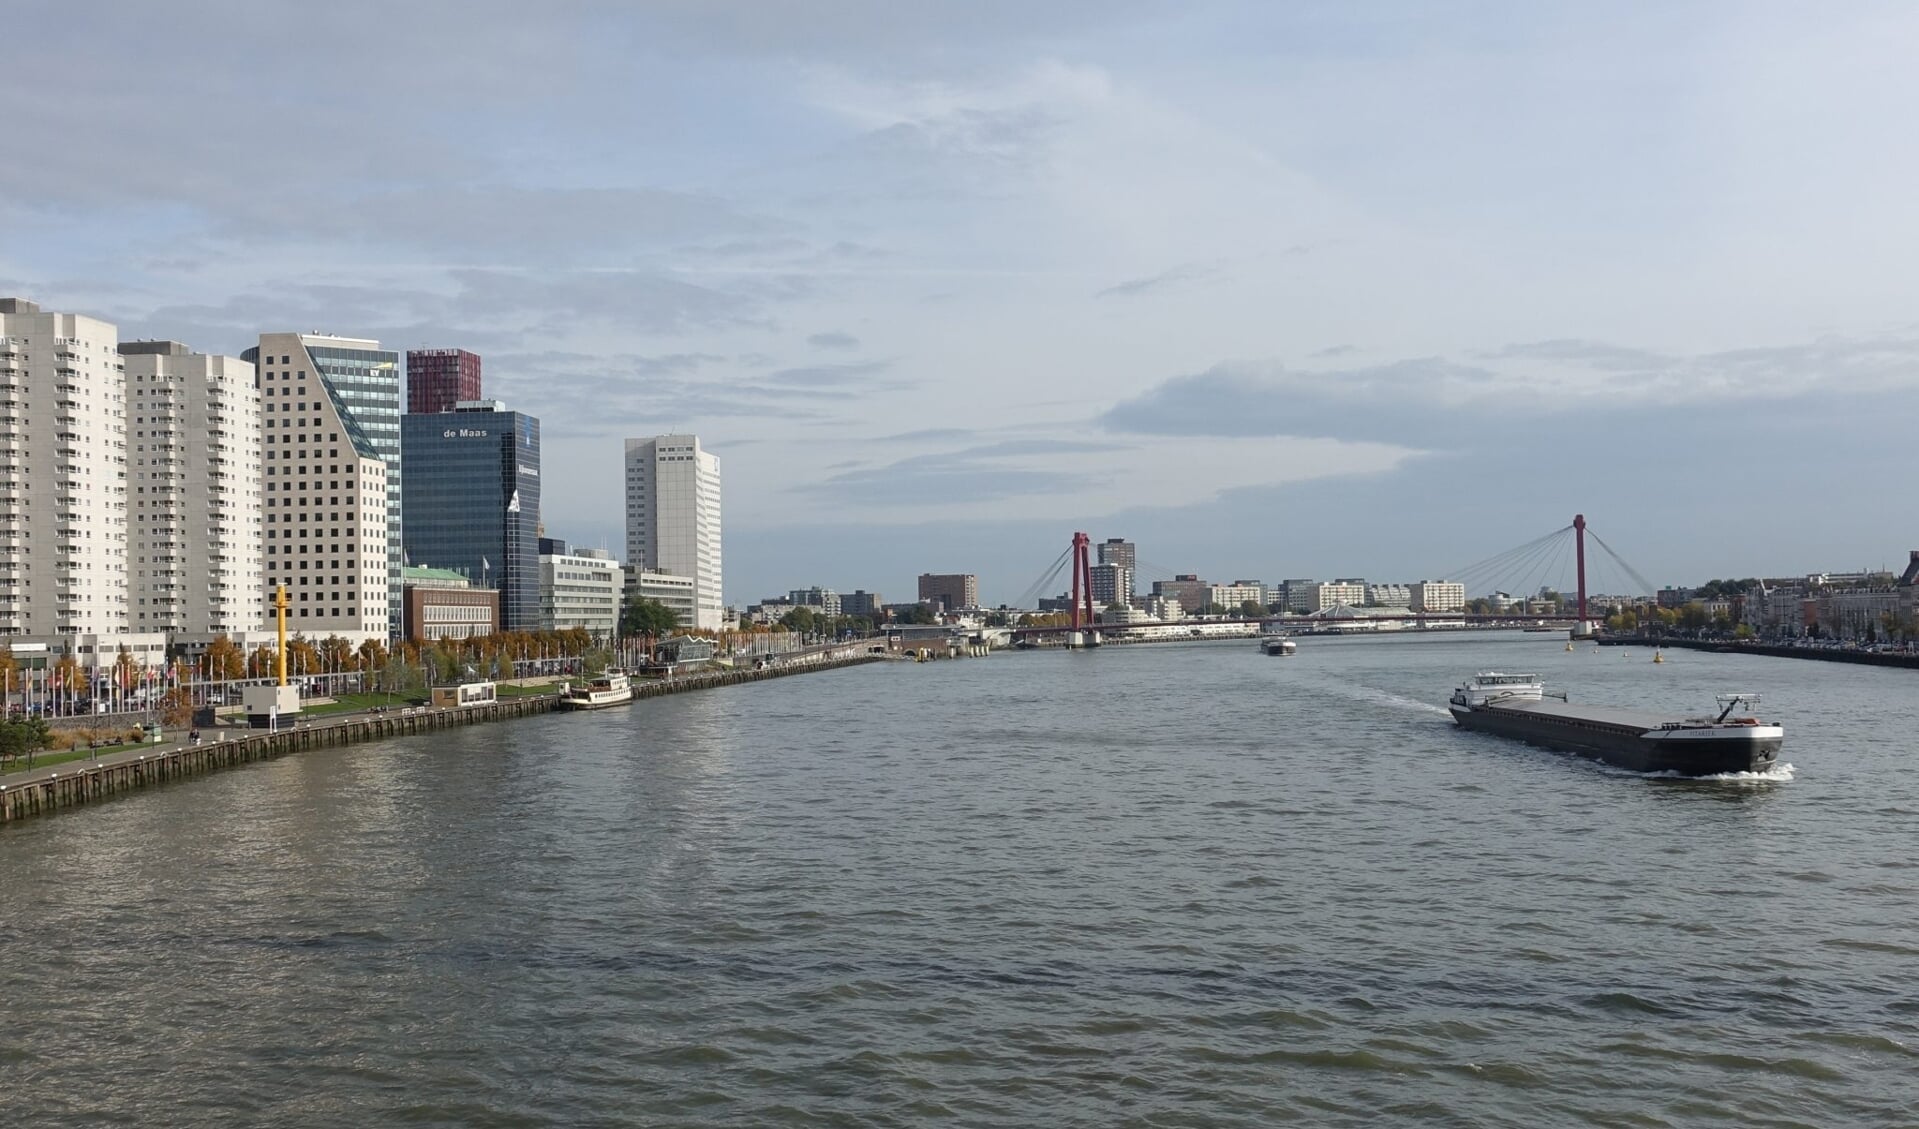  Koninklijke Binnenvaart Nederland (KBN) vindt het schot voor de boeg van wethouder Karremans over de derde brug over de Nieuwe Maas 'verbazingwekkend’'.  Foto: Guilhem Vellut / Wikimedia Commons